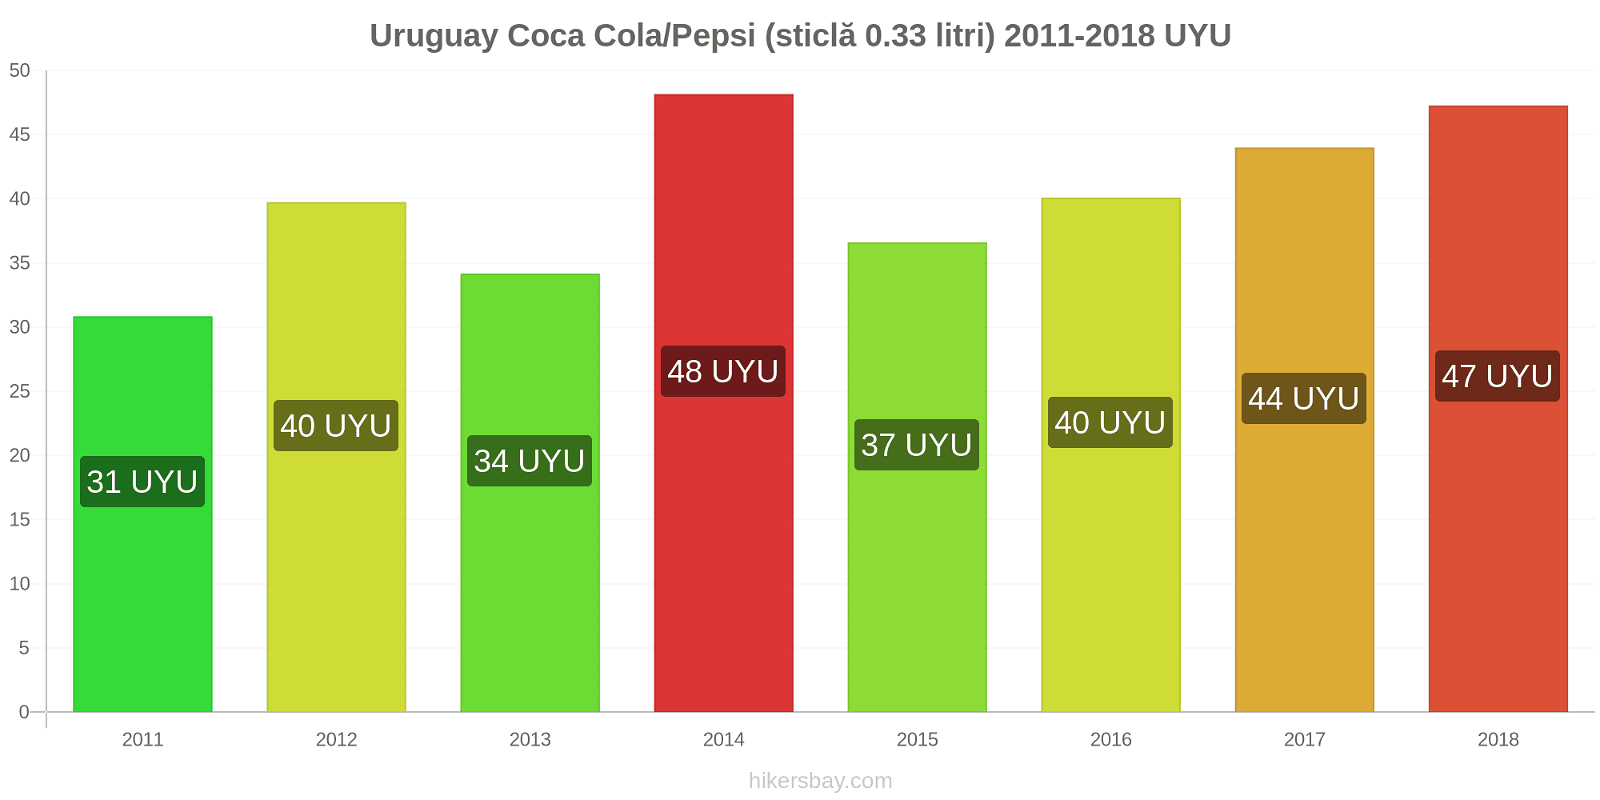 Uruguay schimbări de prețuri Coca-Cola/Pepsi (sticlă de 0.33 litri) hikersbay.com